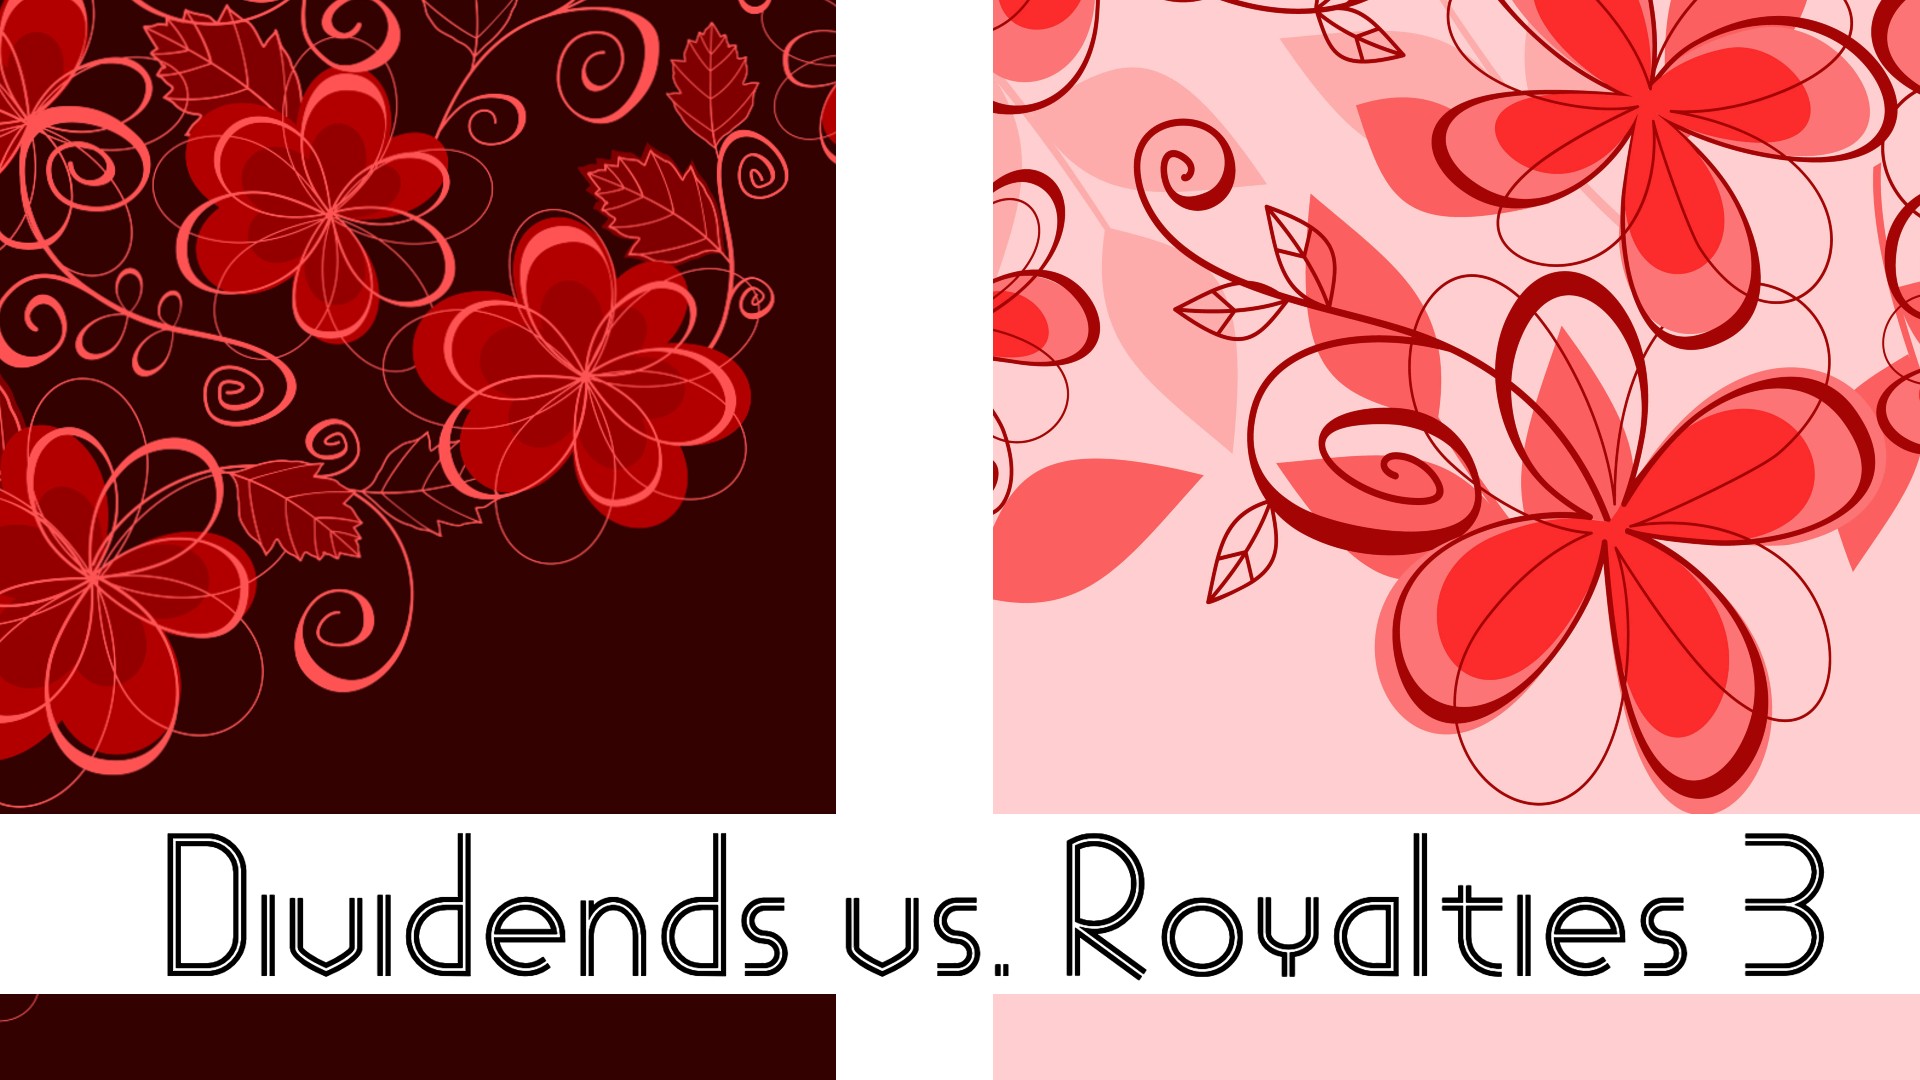 Dividends vs. Royalties part III